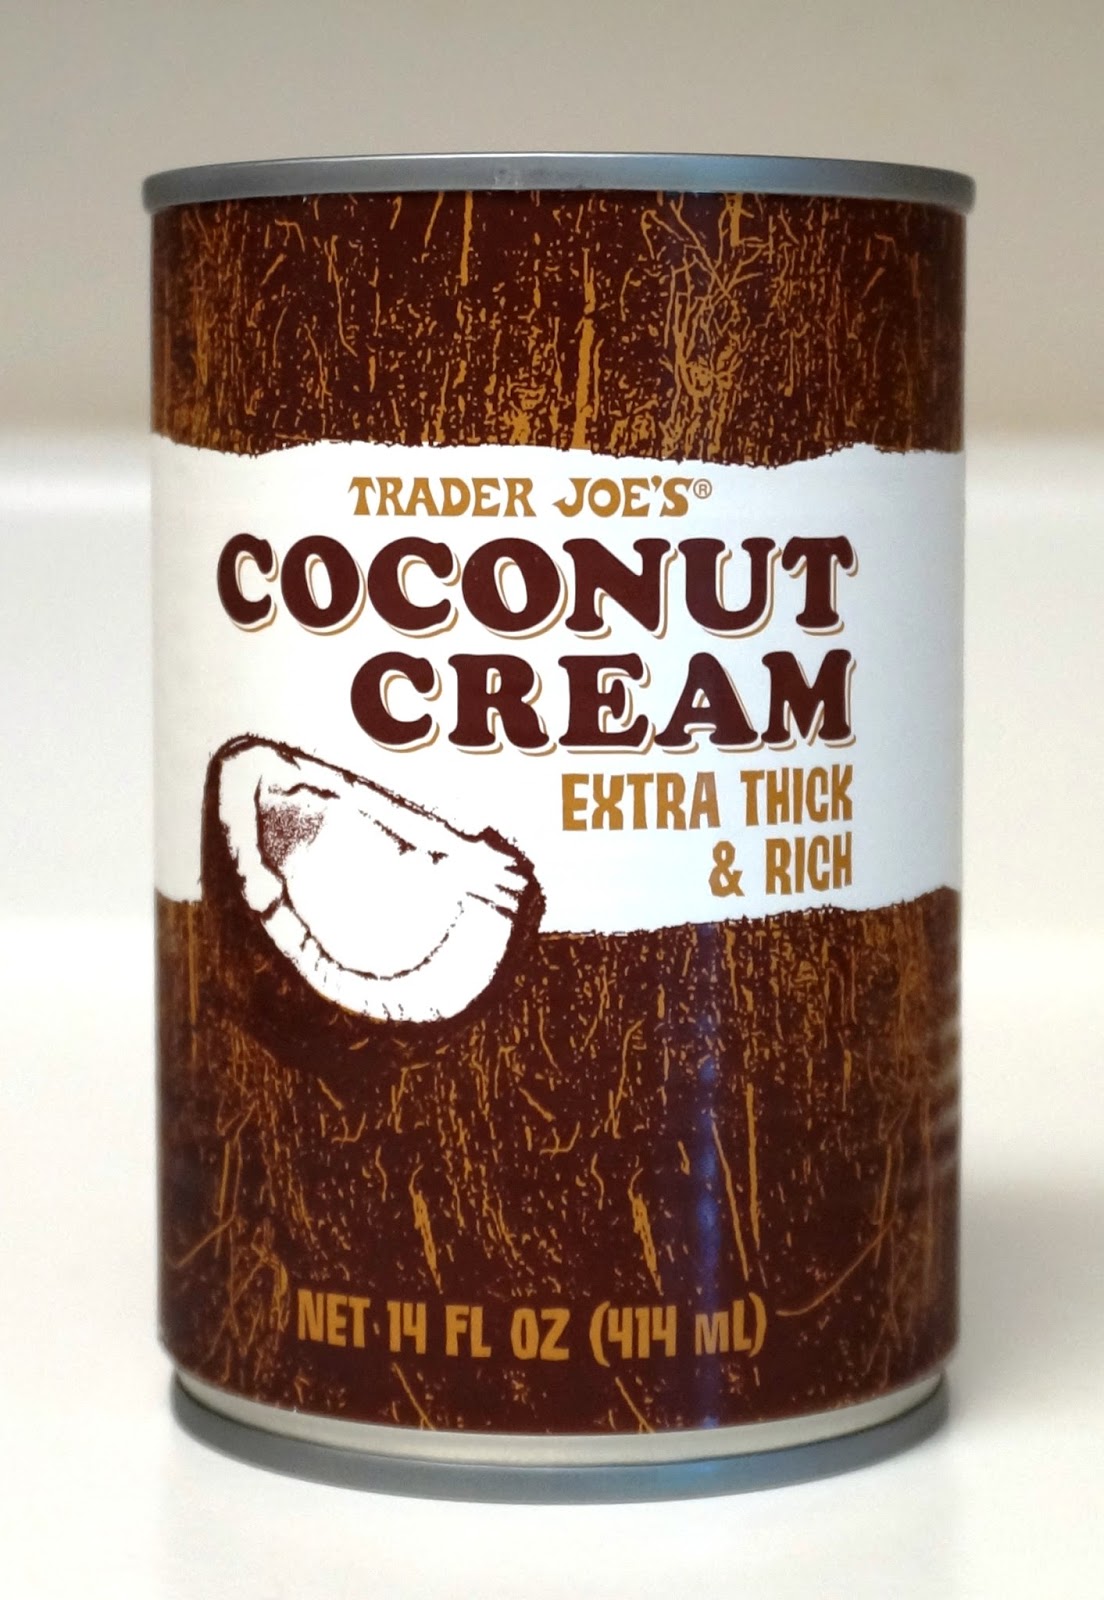 Exploring Trader Joe's: Trader Joe's Coconut Cream